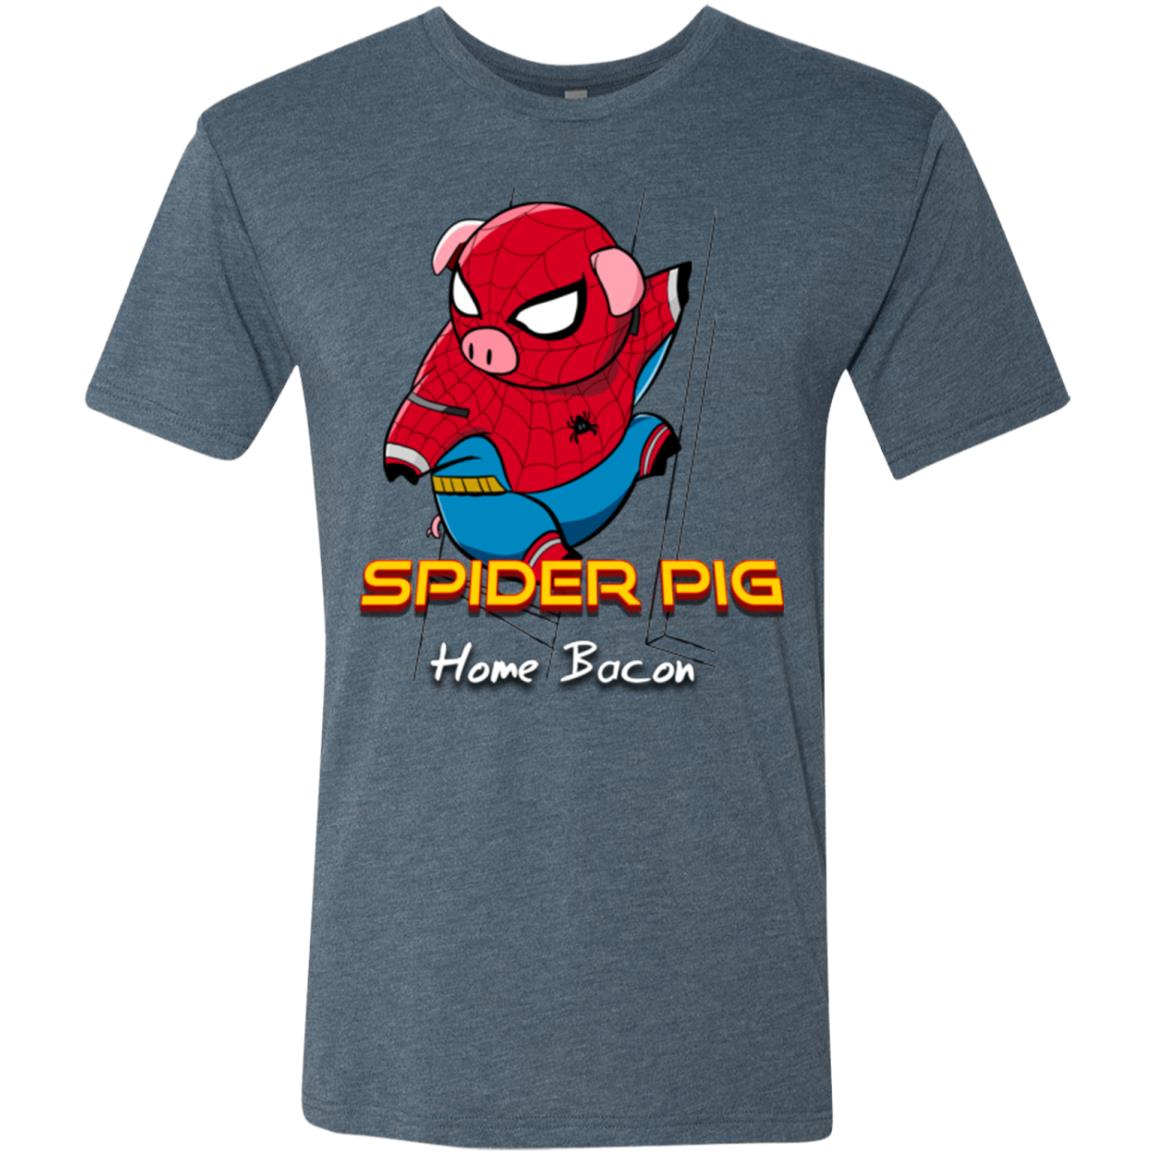 Spider Pig Build Line Men's Triblend T-Shirt